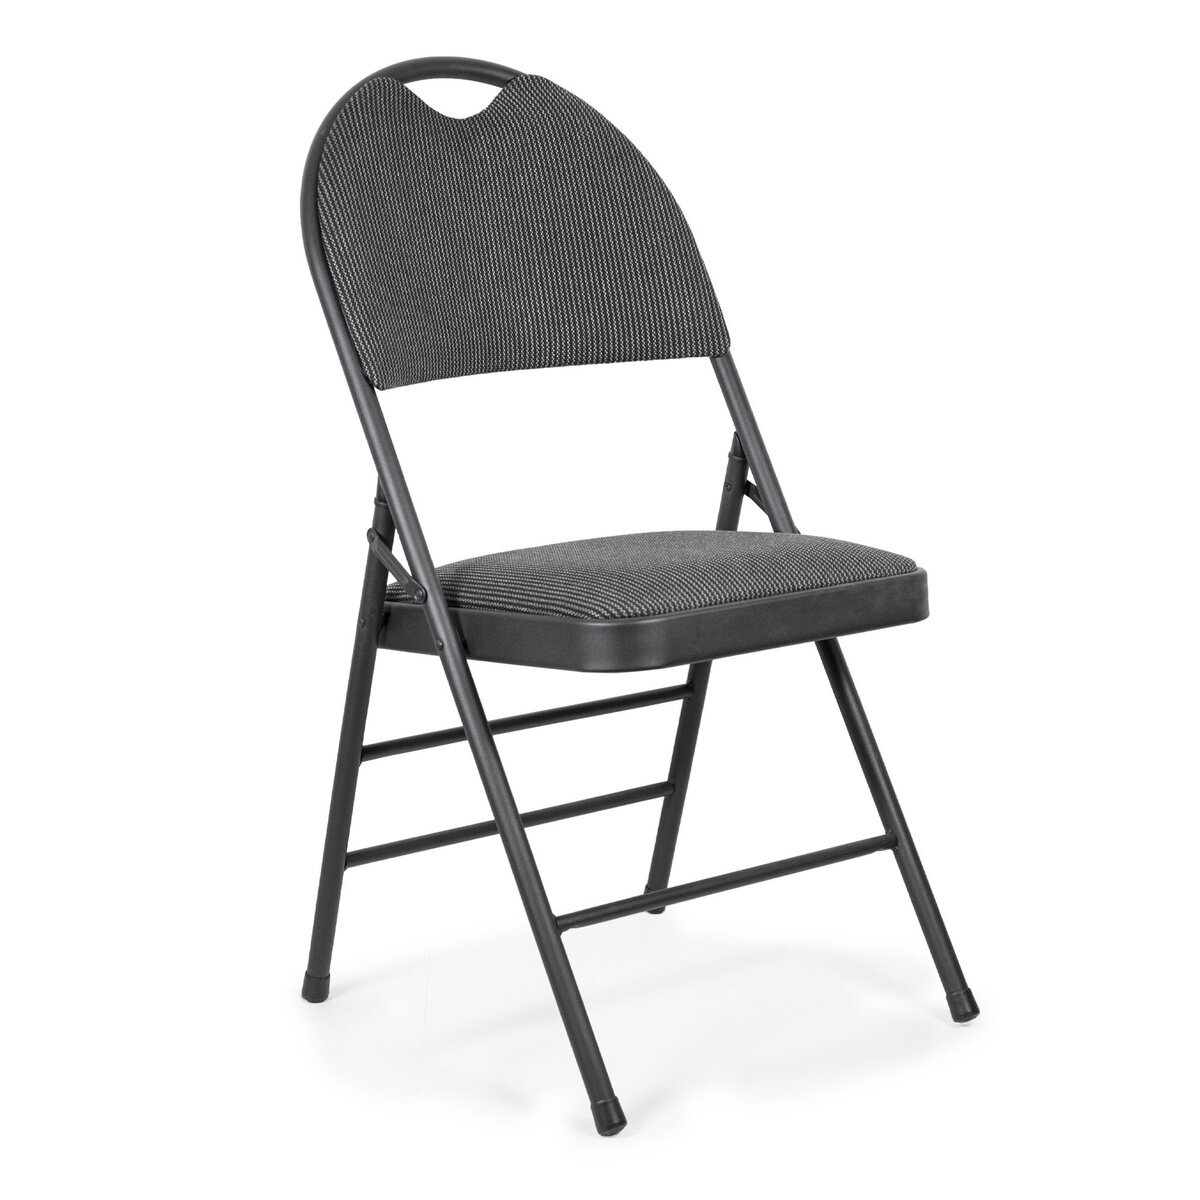 ELITE 折り畳み椅子 | Costco Japan